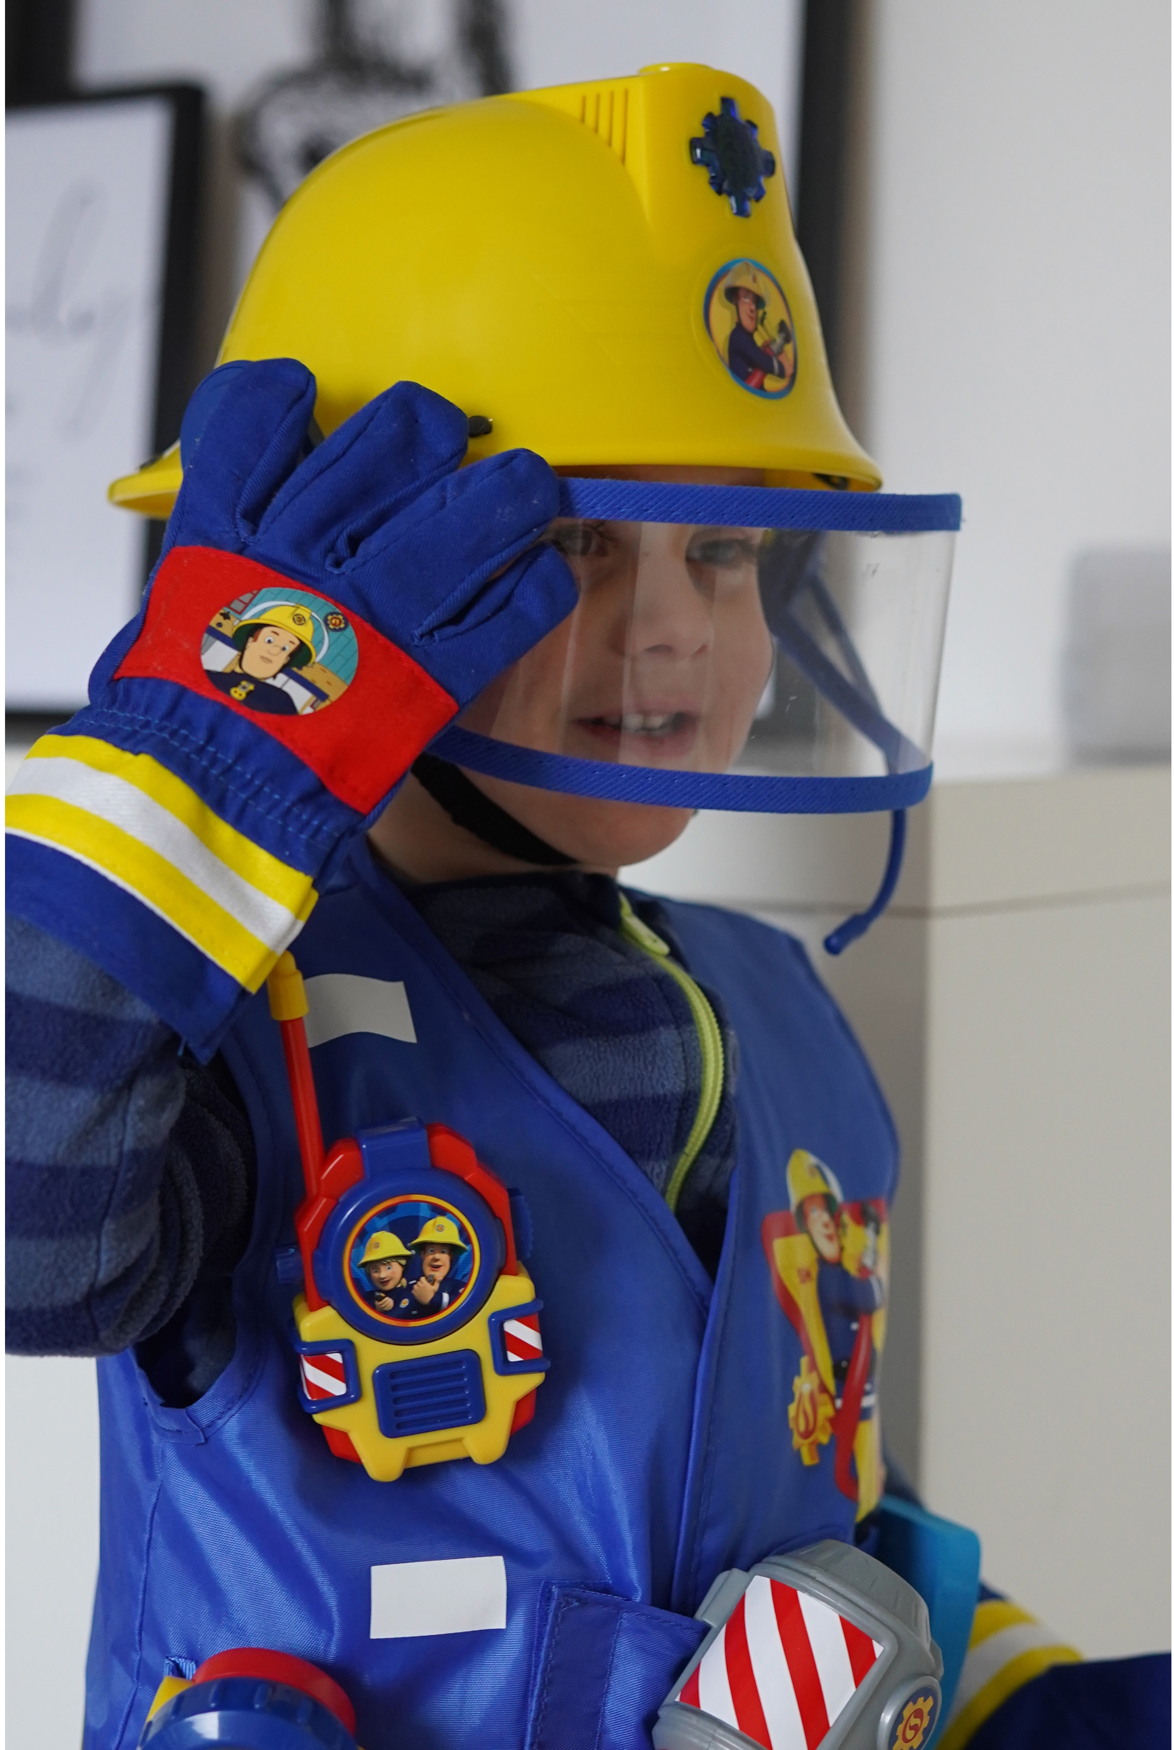 Spielwaren Express - Simba Sam Feuerwehrmann Funktion Spielzeug 109252365 mit Helm Spielwelt Feuerwehr